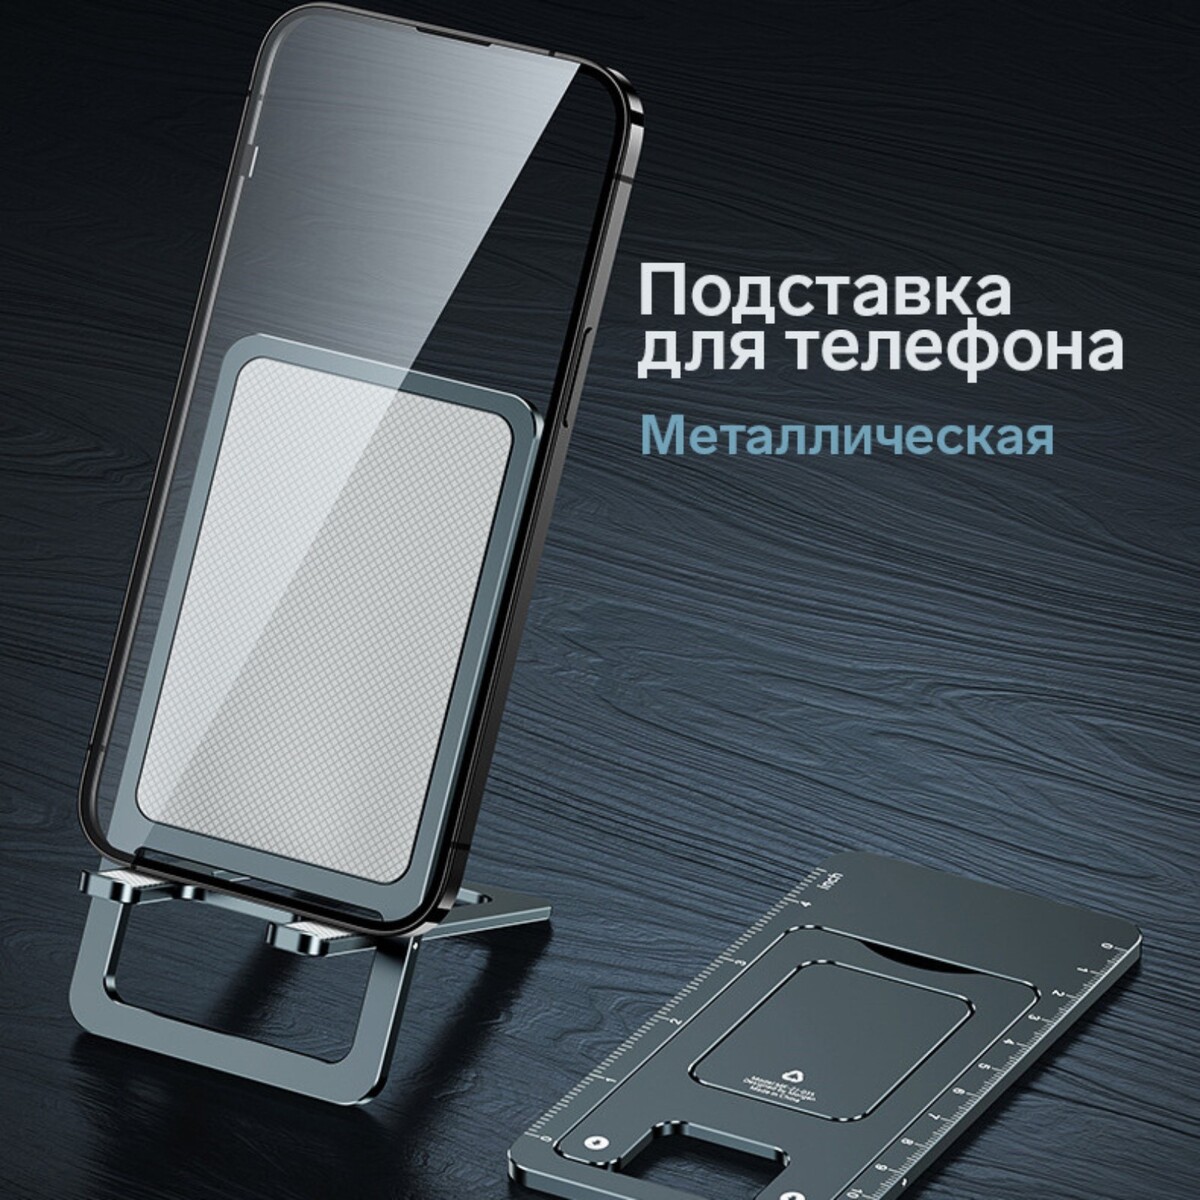 Подставка для телефона, складная, металлическая, прорезиненная, черная